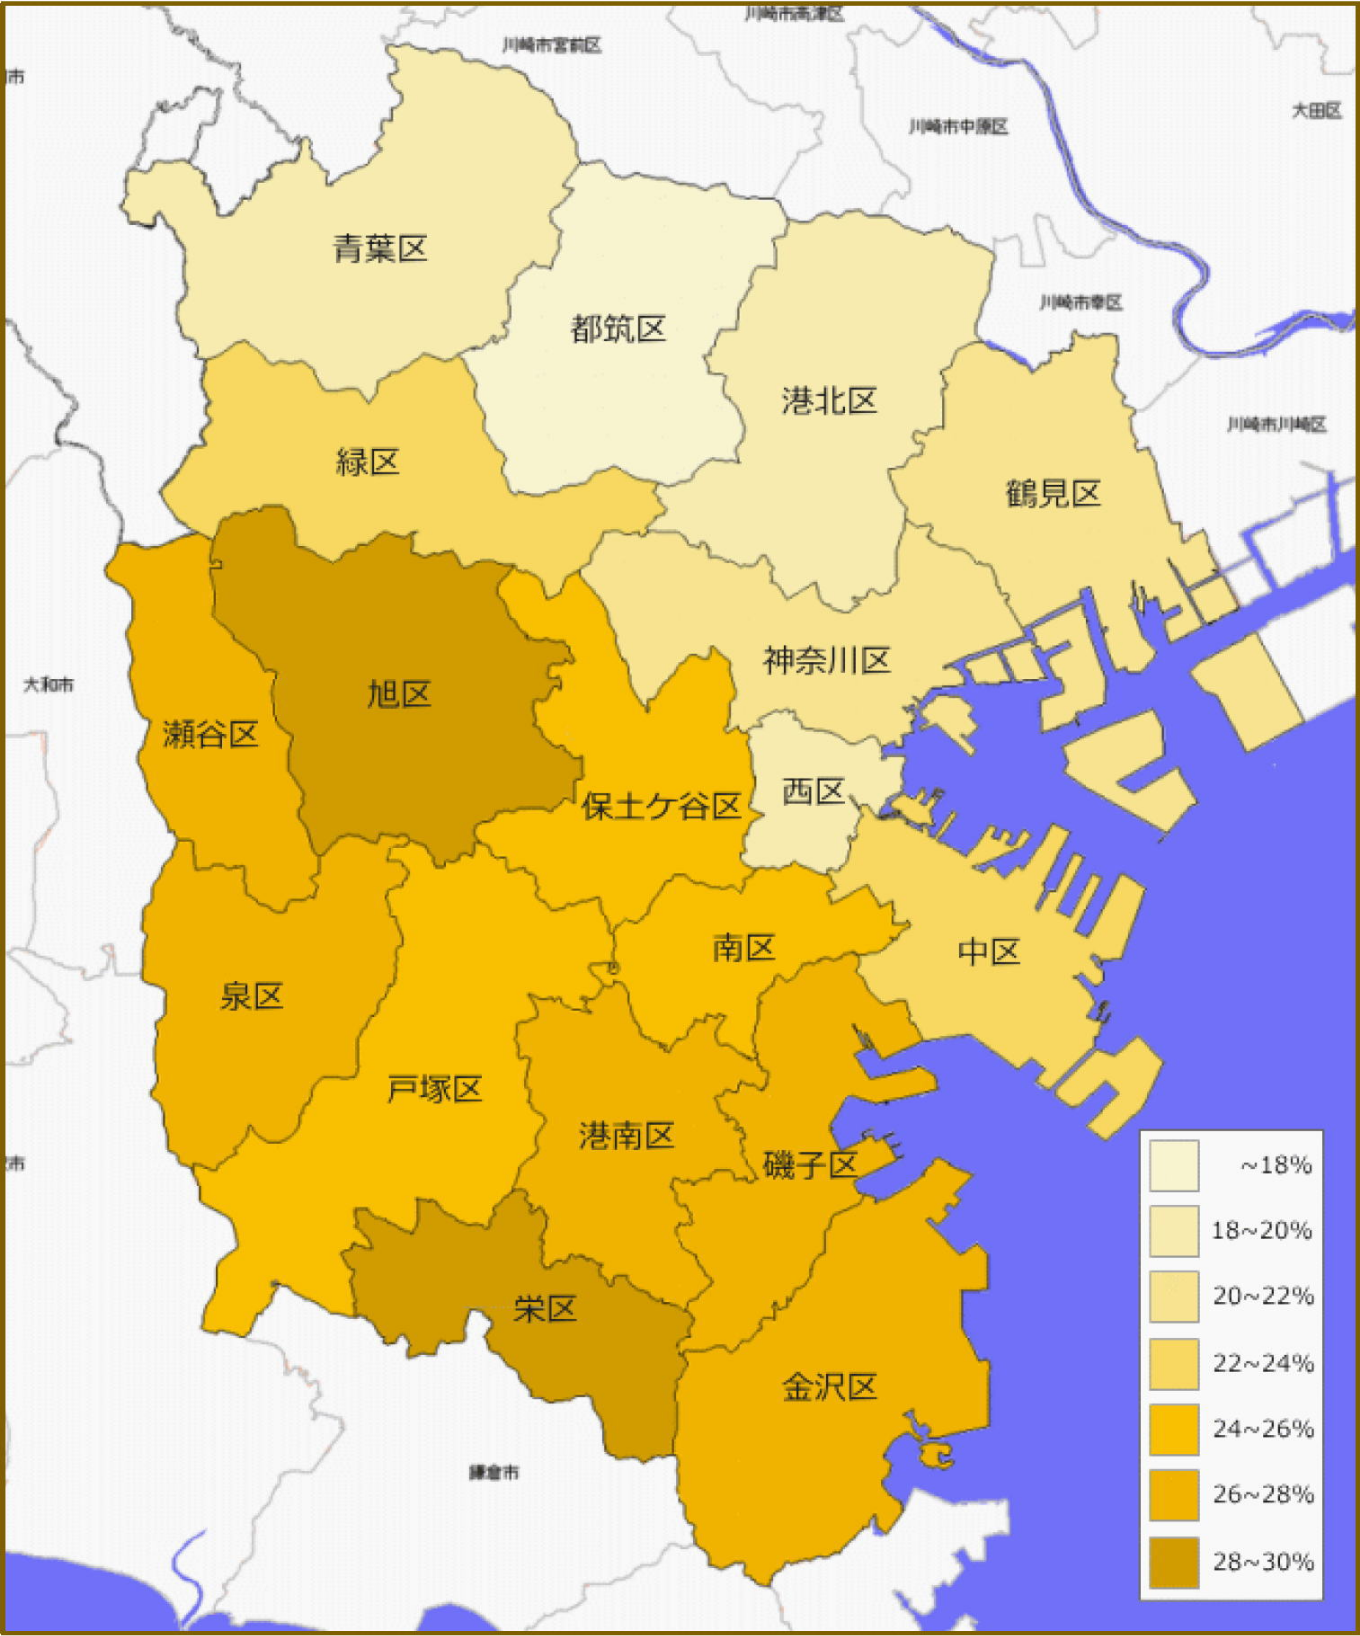 横浜市 18区の老齢人口比による色別